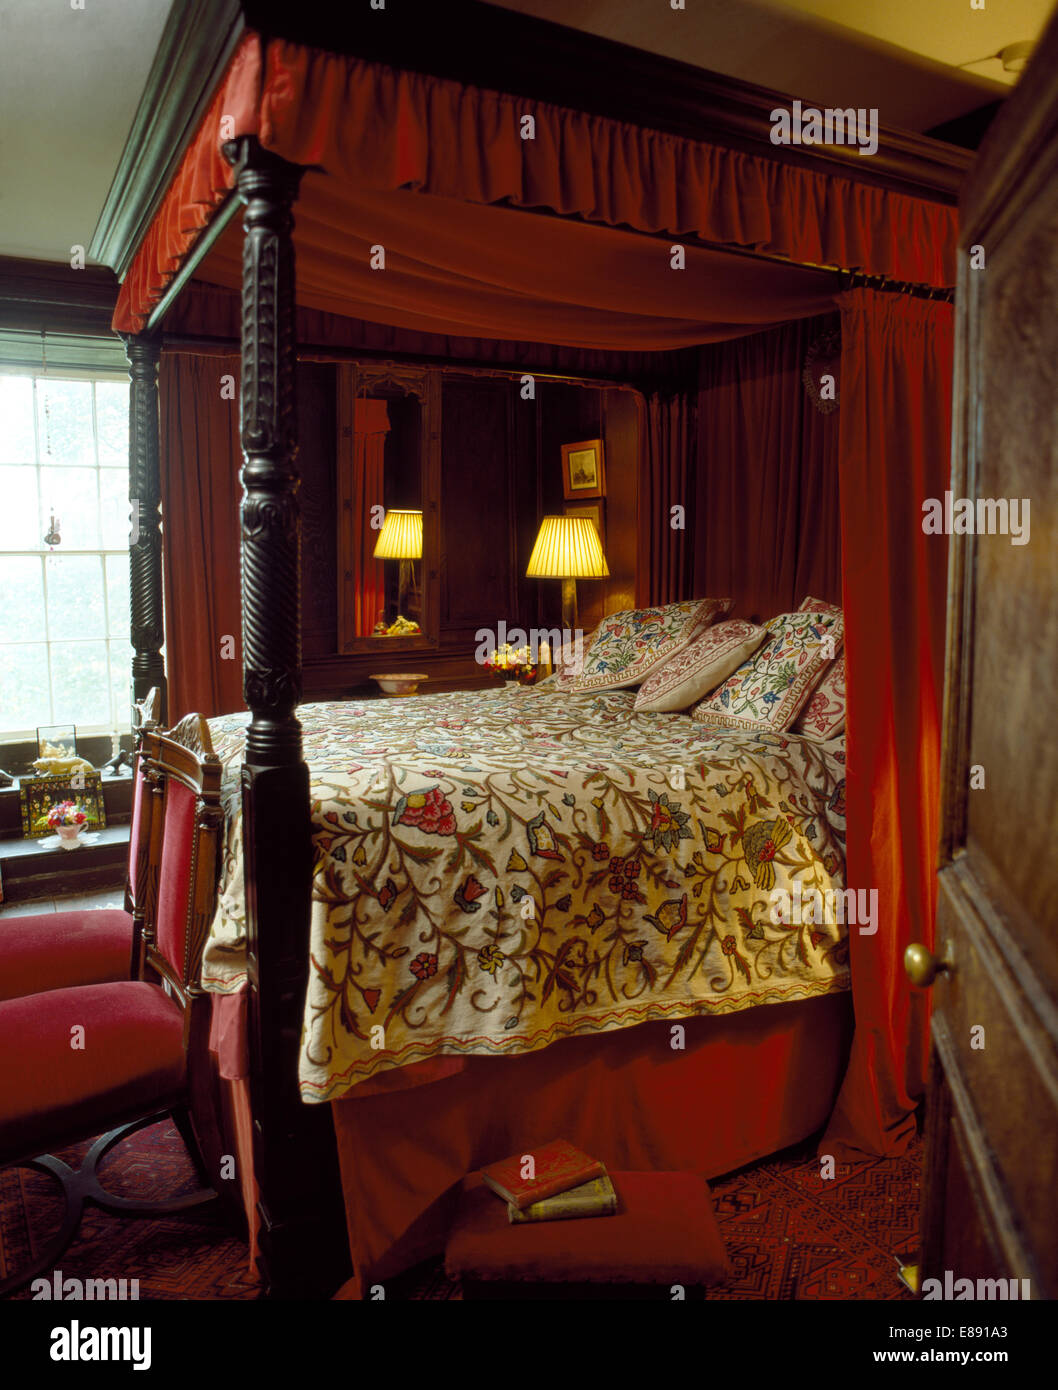 Antike Schlafzimmereinrichtungen Bett mit roten Vorhängen und Crewelwork Bettdecke im traditionellen Landhausstil Schlafzimmer Stockfoto